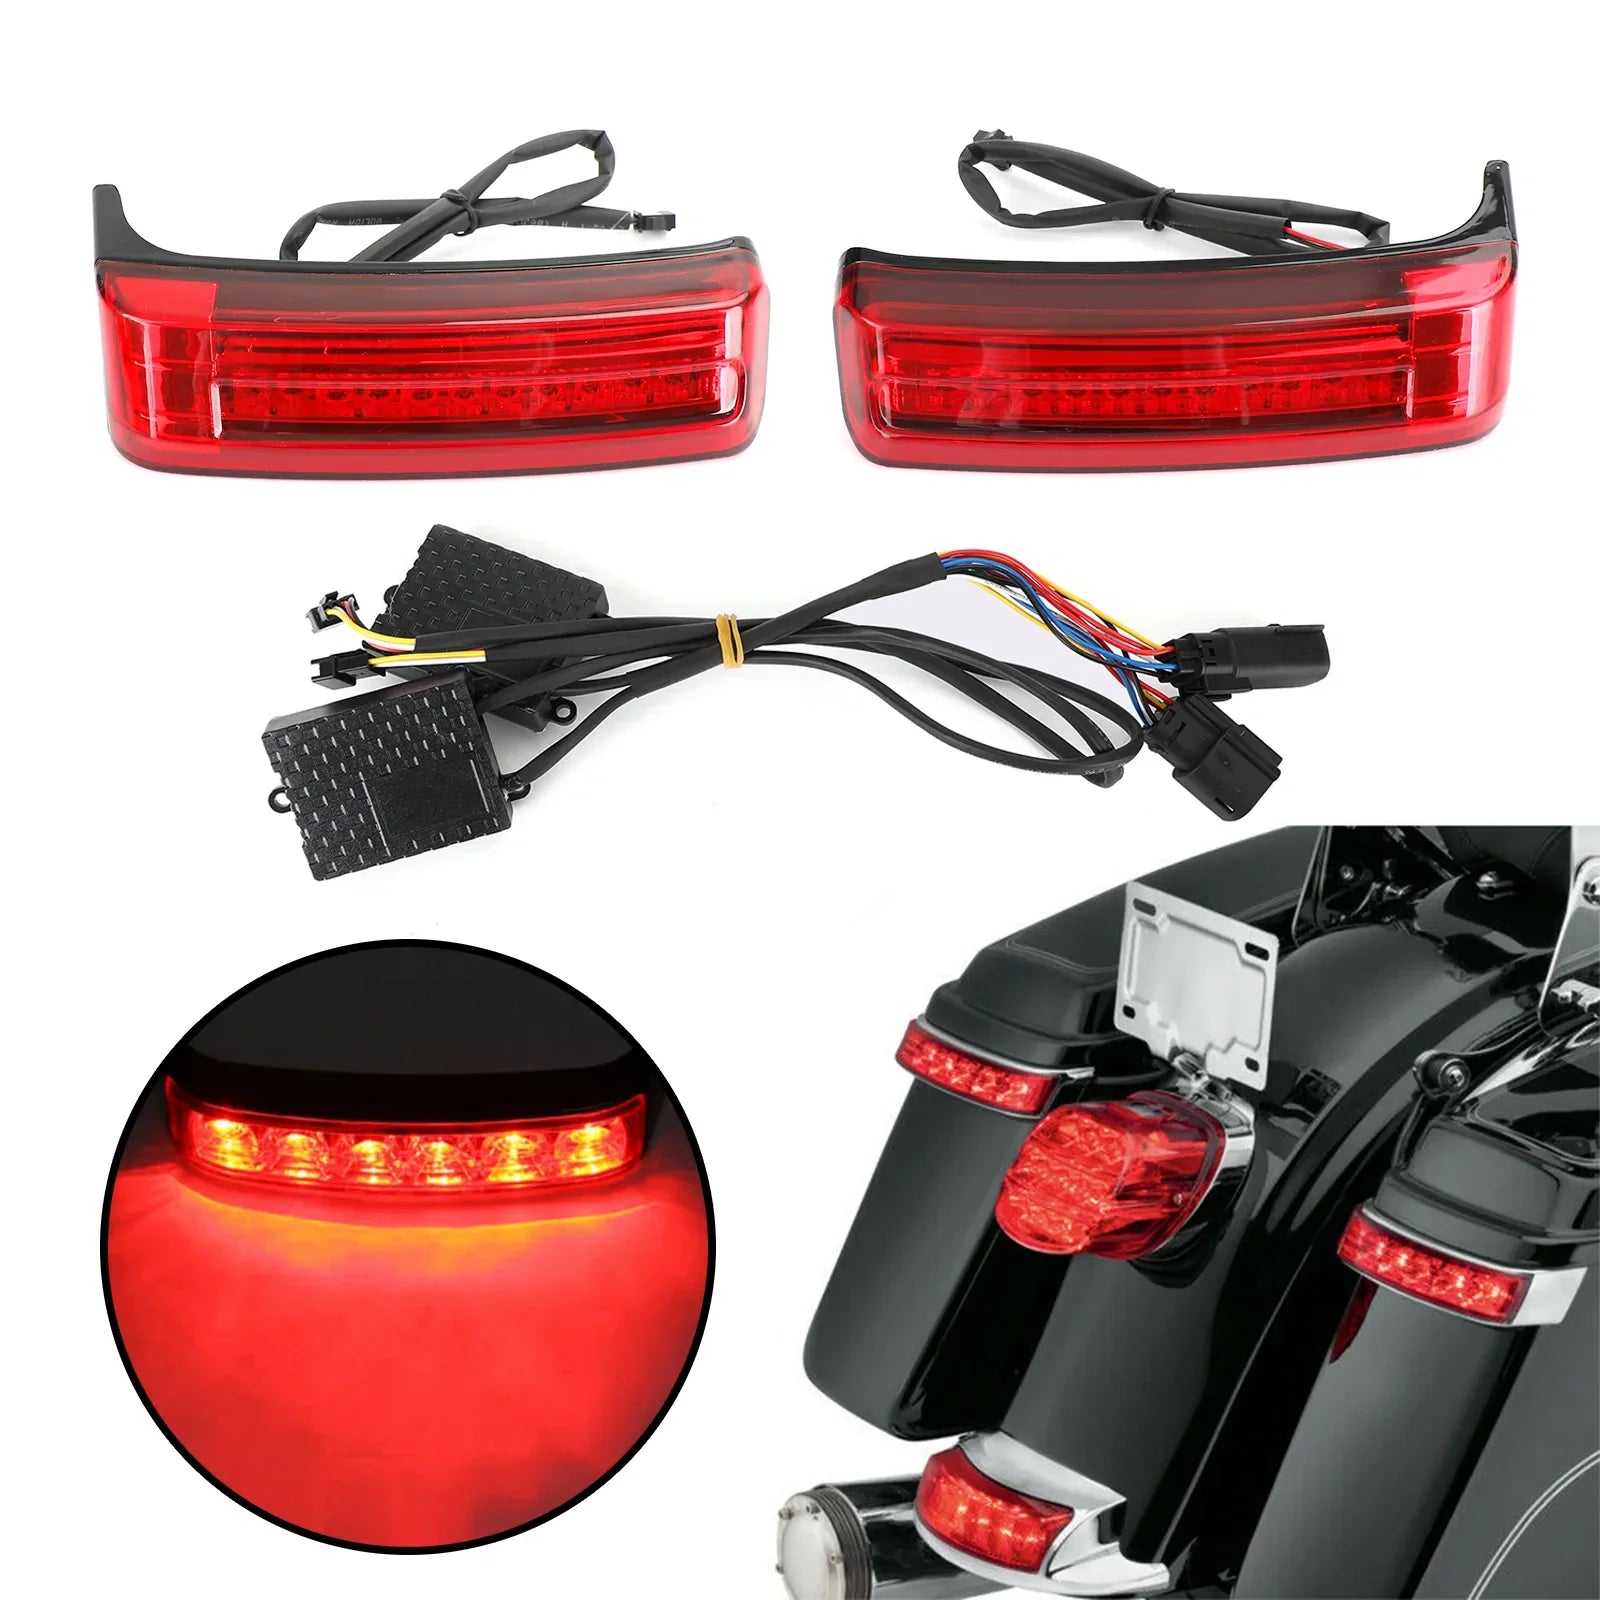 Sacoche de selle à LED Sacoches de selle Run Brake Turn Lamp Lights For Touring 2014-2021 Generic